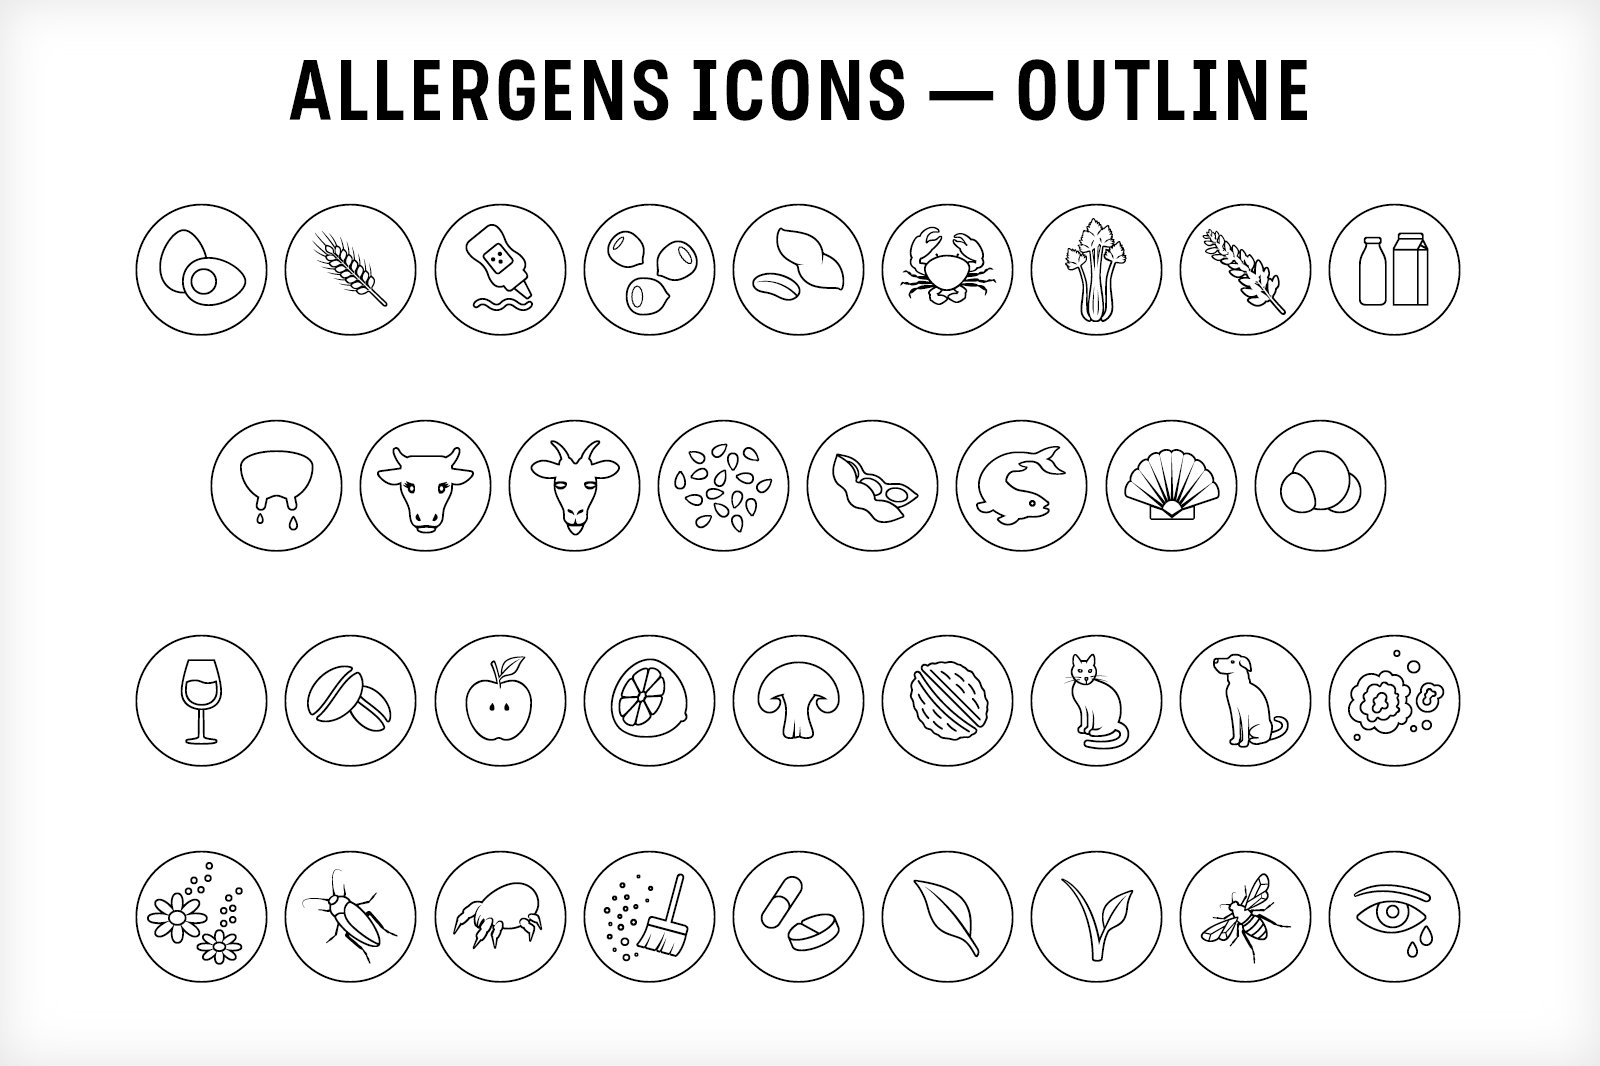 allergen icons cm 5 685